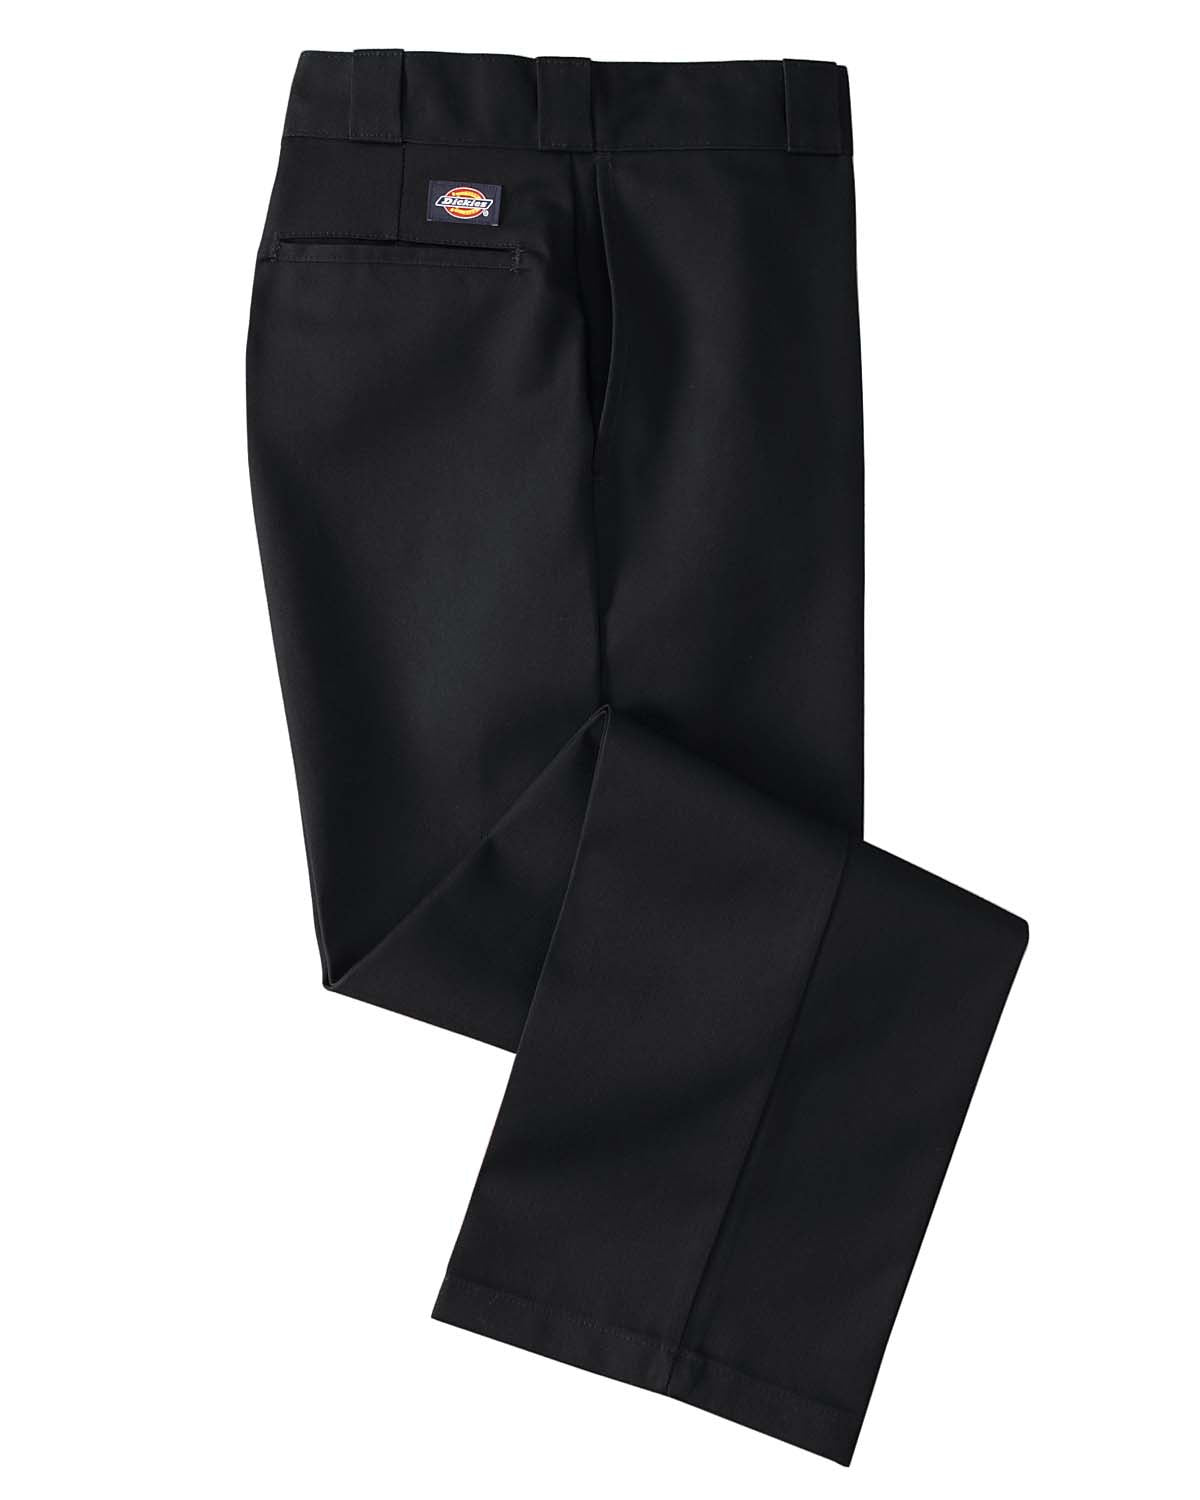 Dickies Pants: Men's Wrinkle Resistant Original 874 Pant Black – Army Navy Now